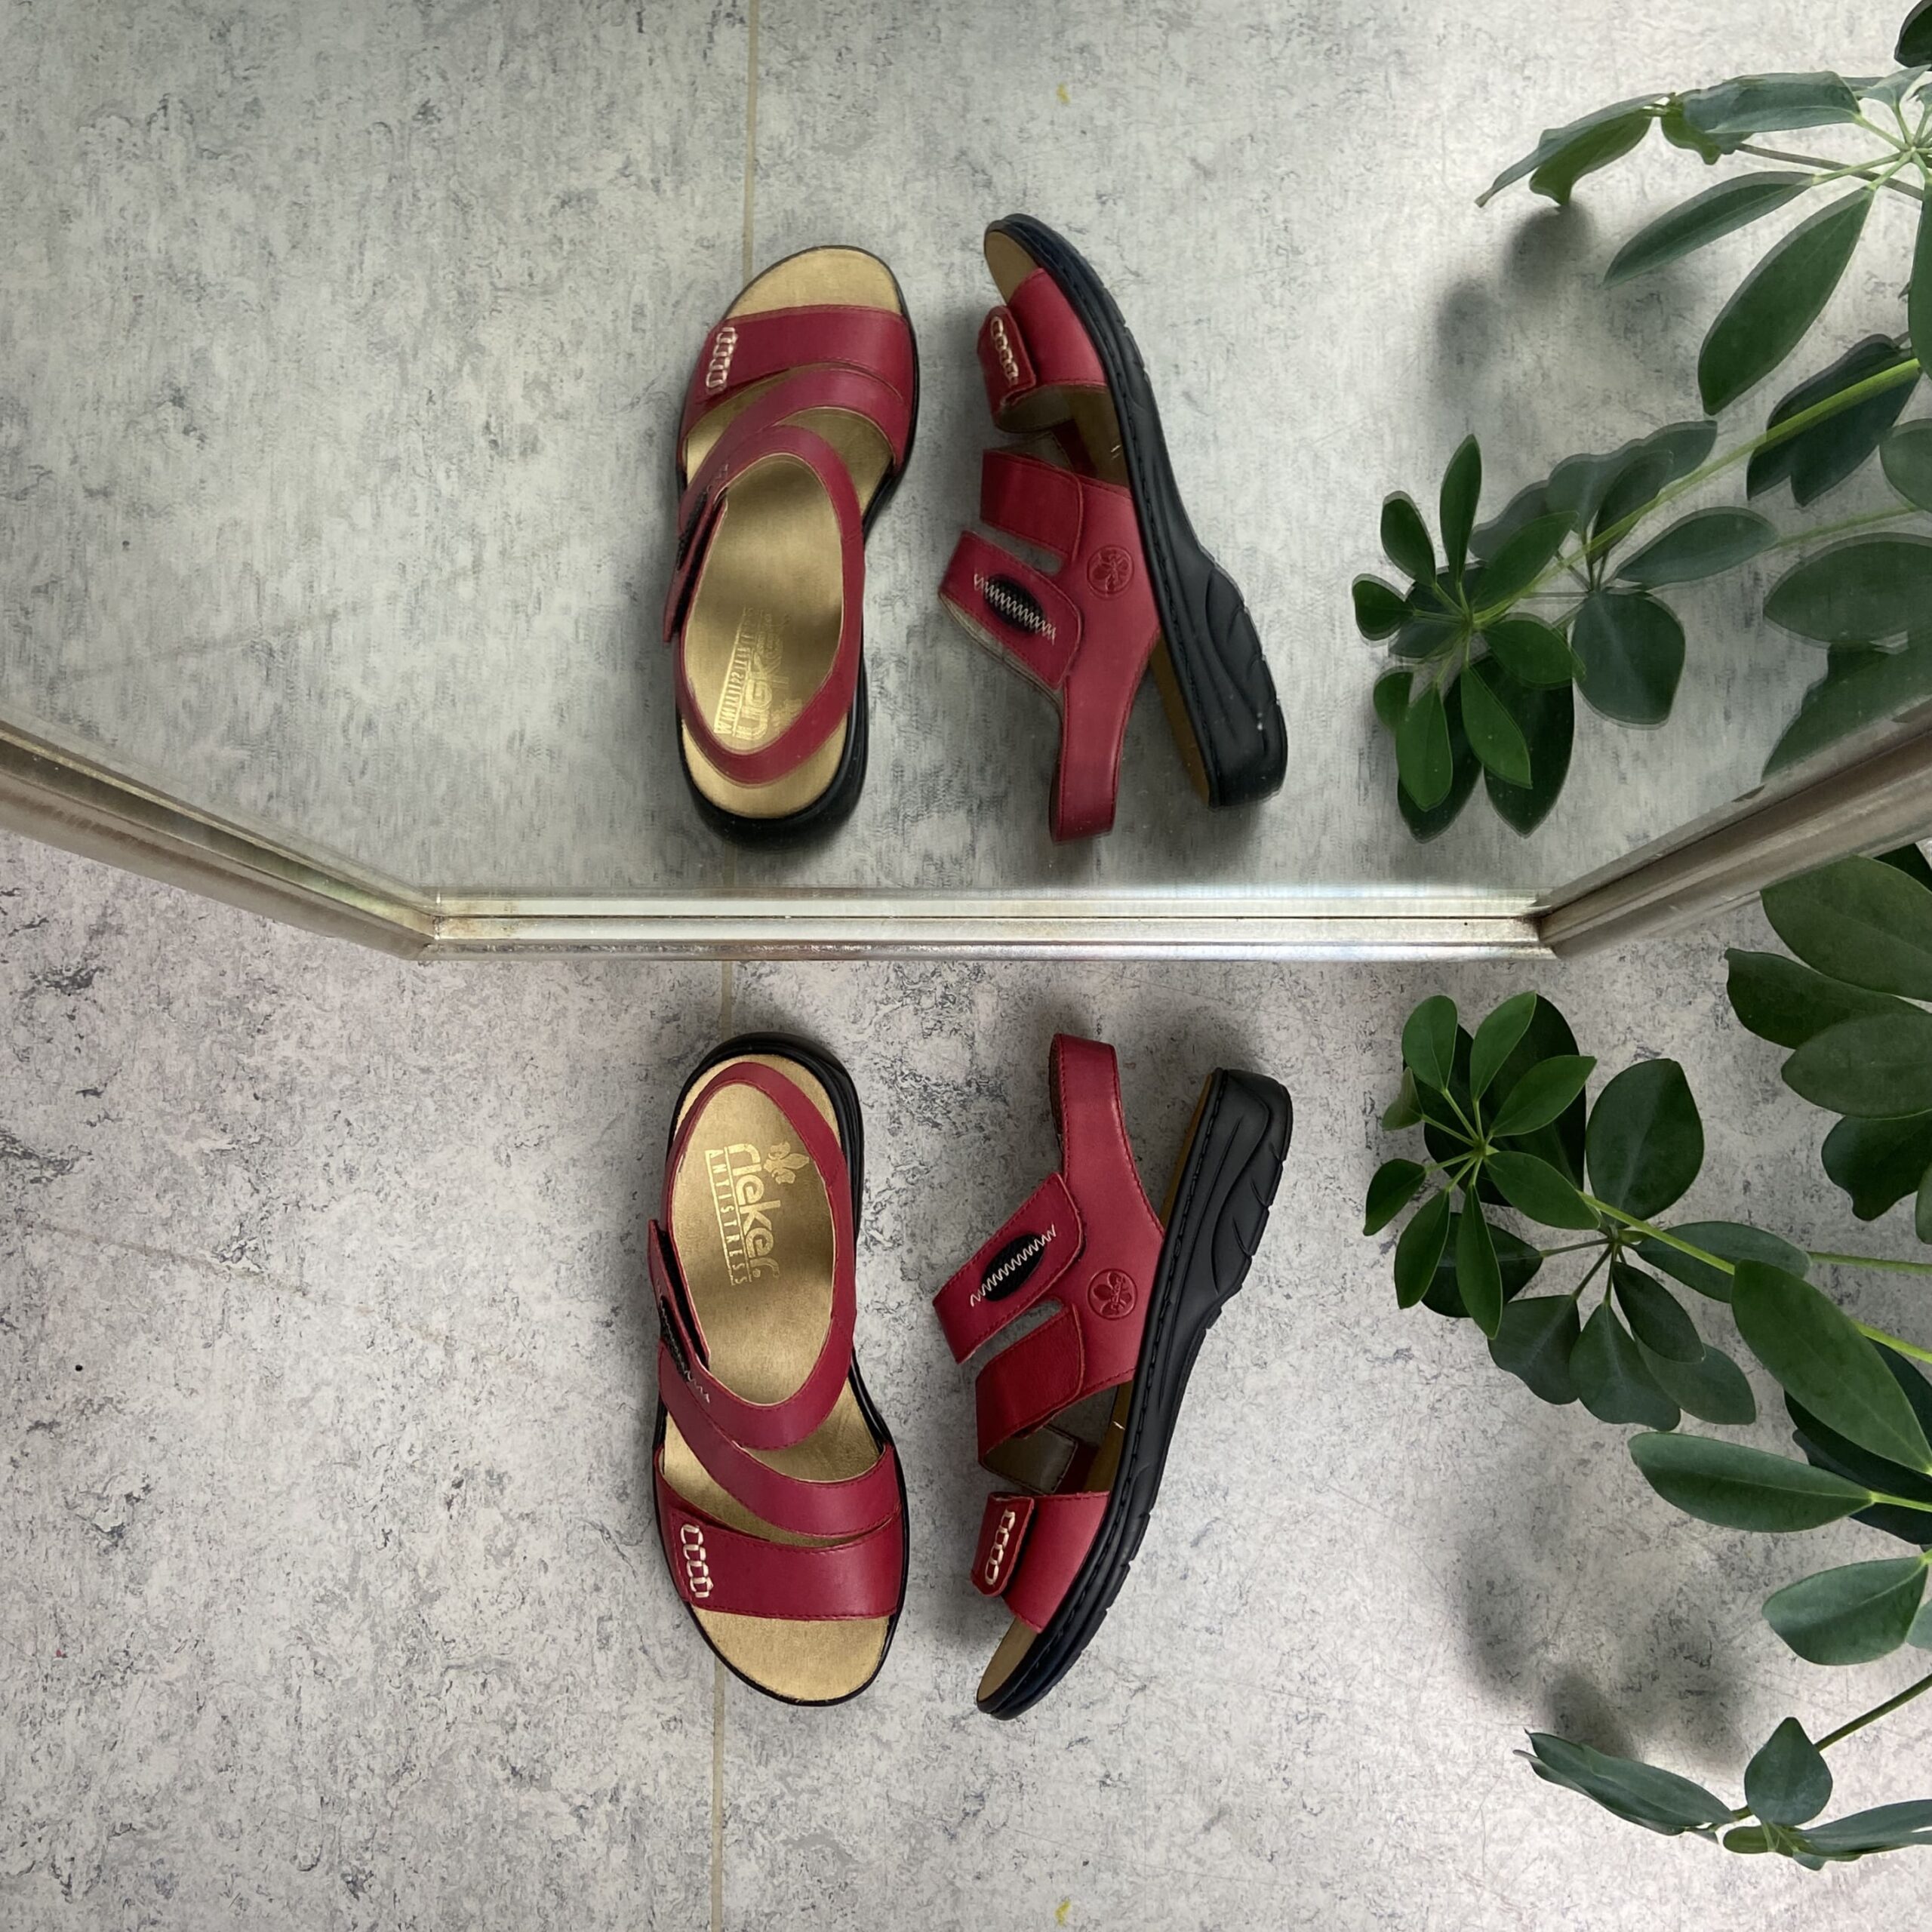 træner Rouse generøsitet Rød Rieker sandal med velcro i forfod og udtagelig sål - Sygeplejebutikken